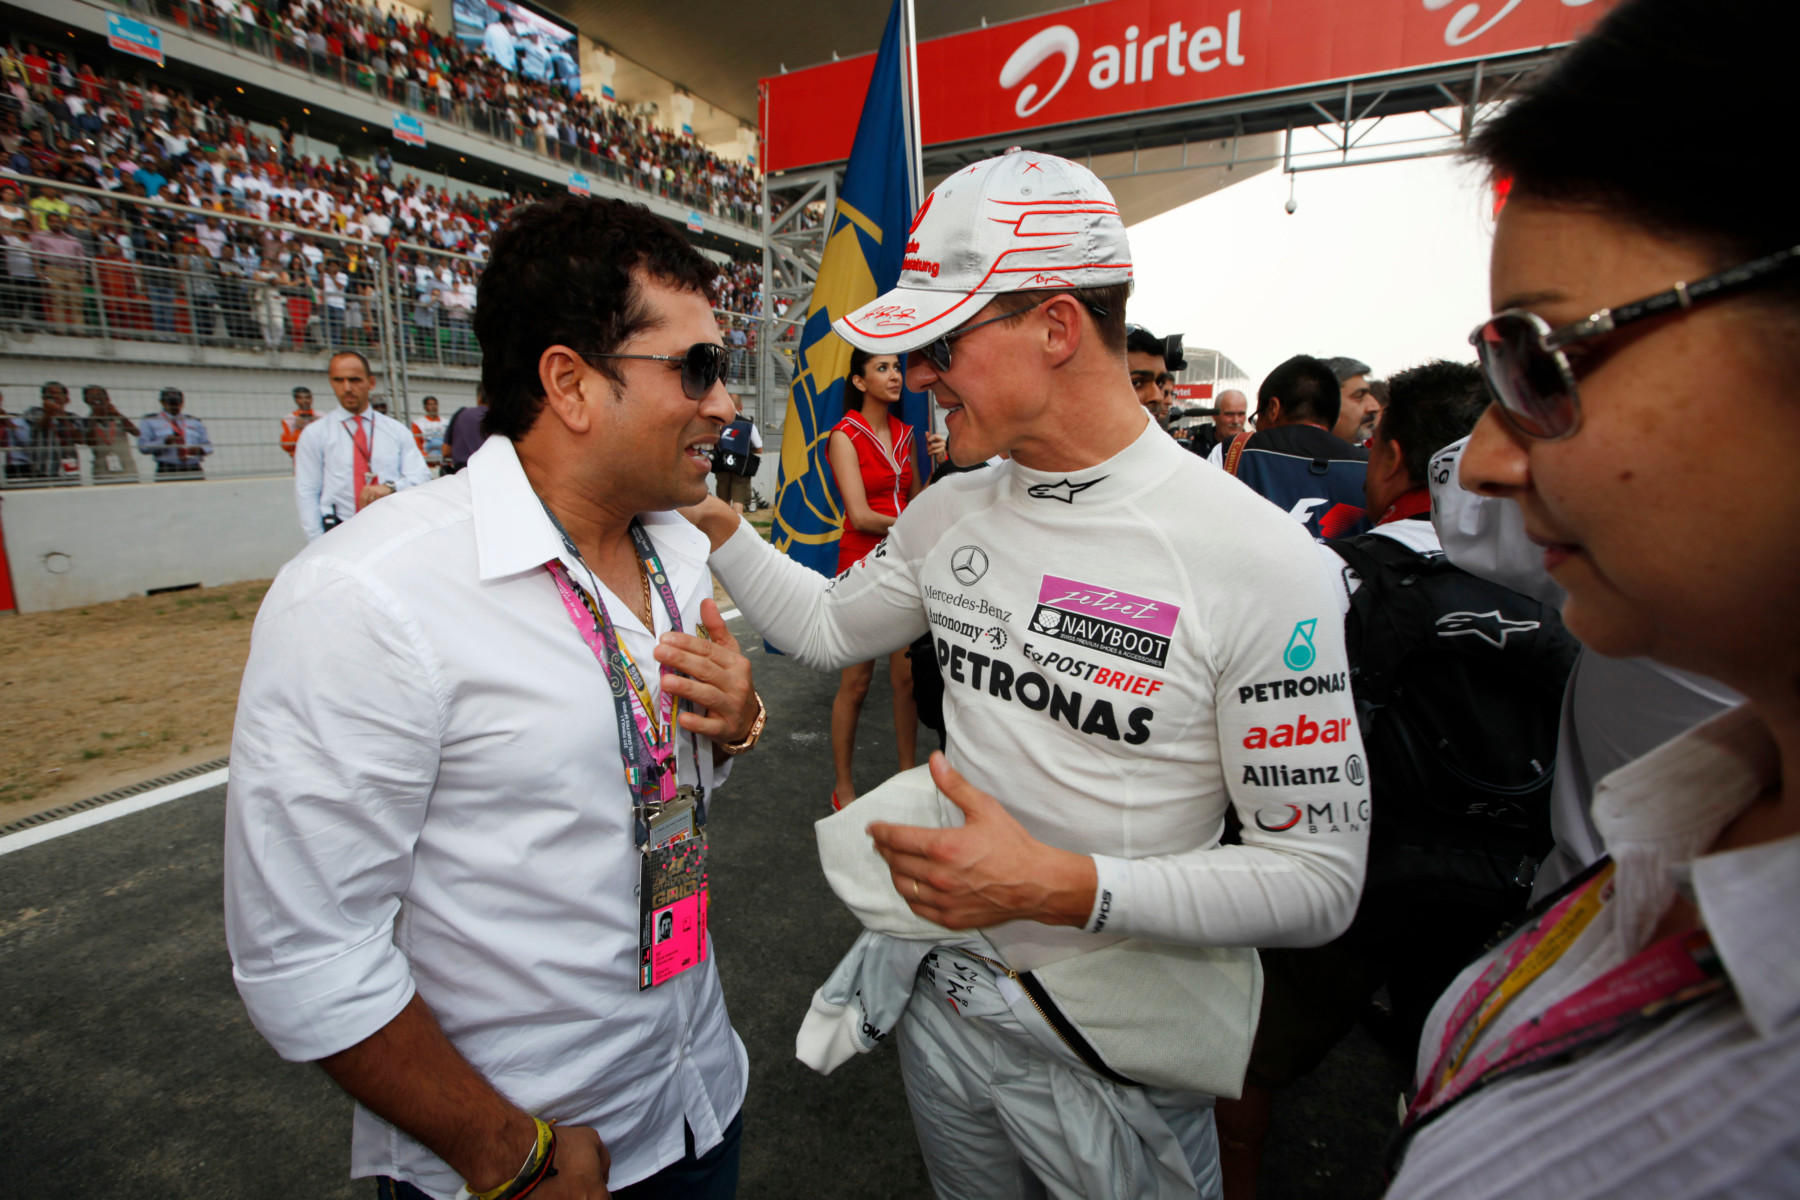 Pal Michael Schumacher presented Tendulkar with his new ride